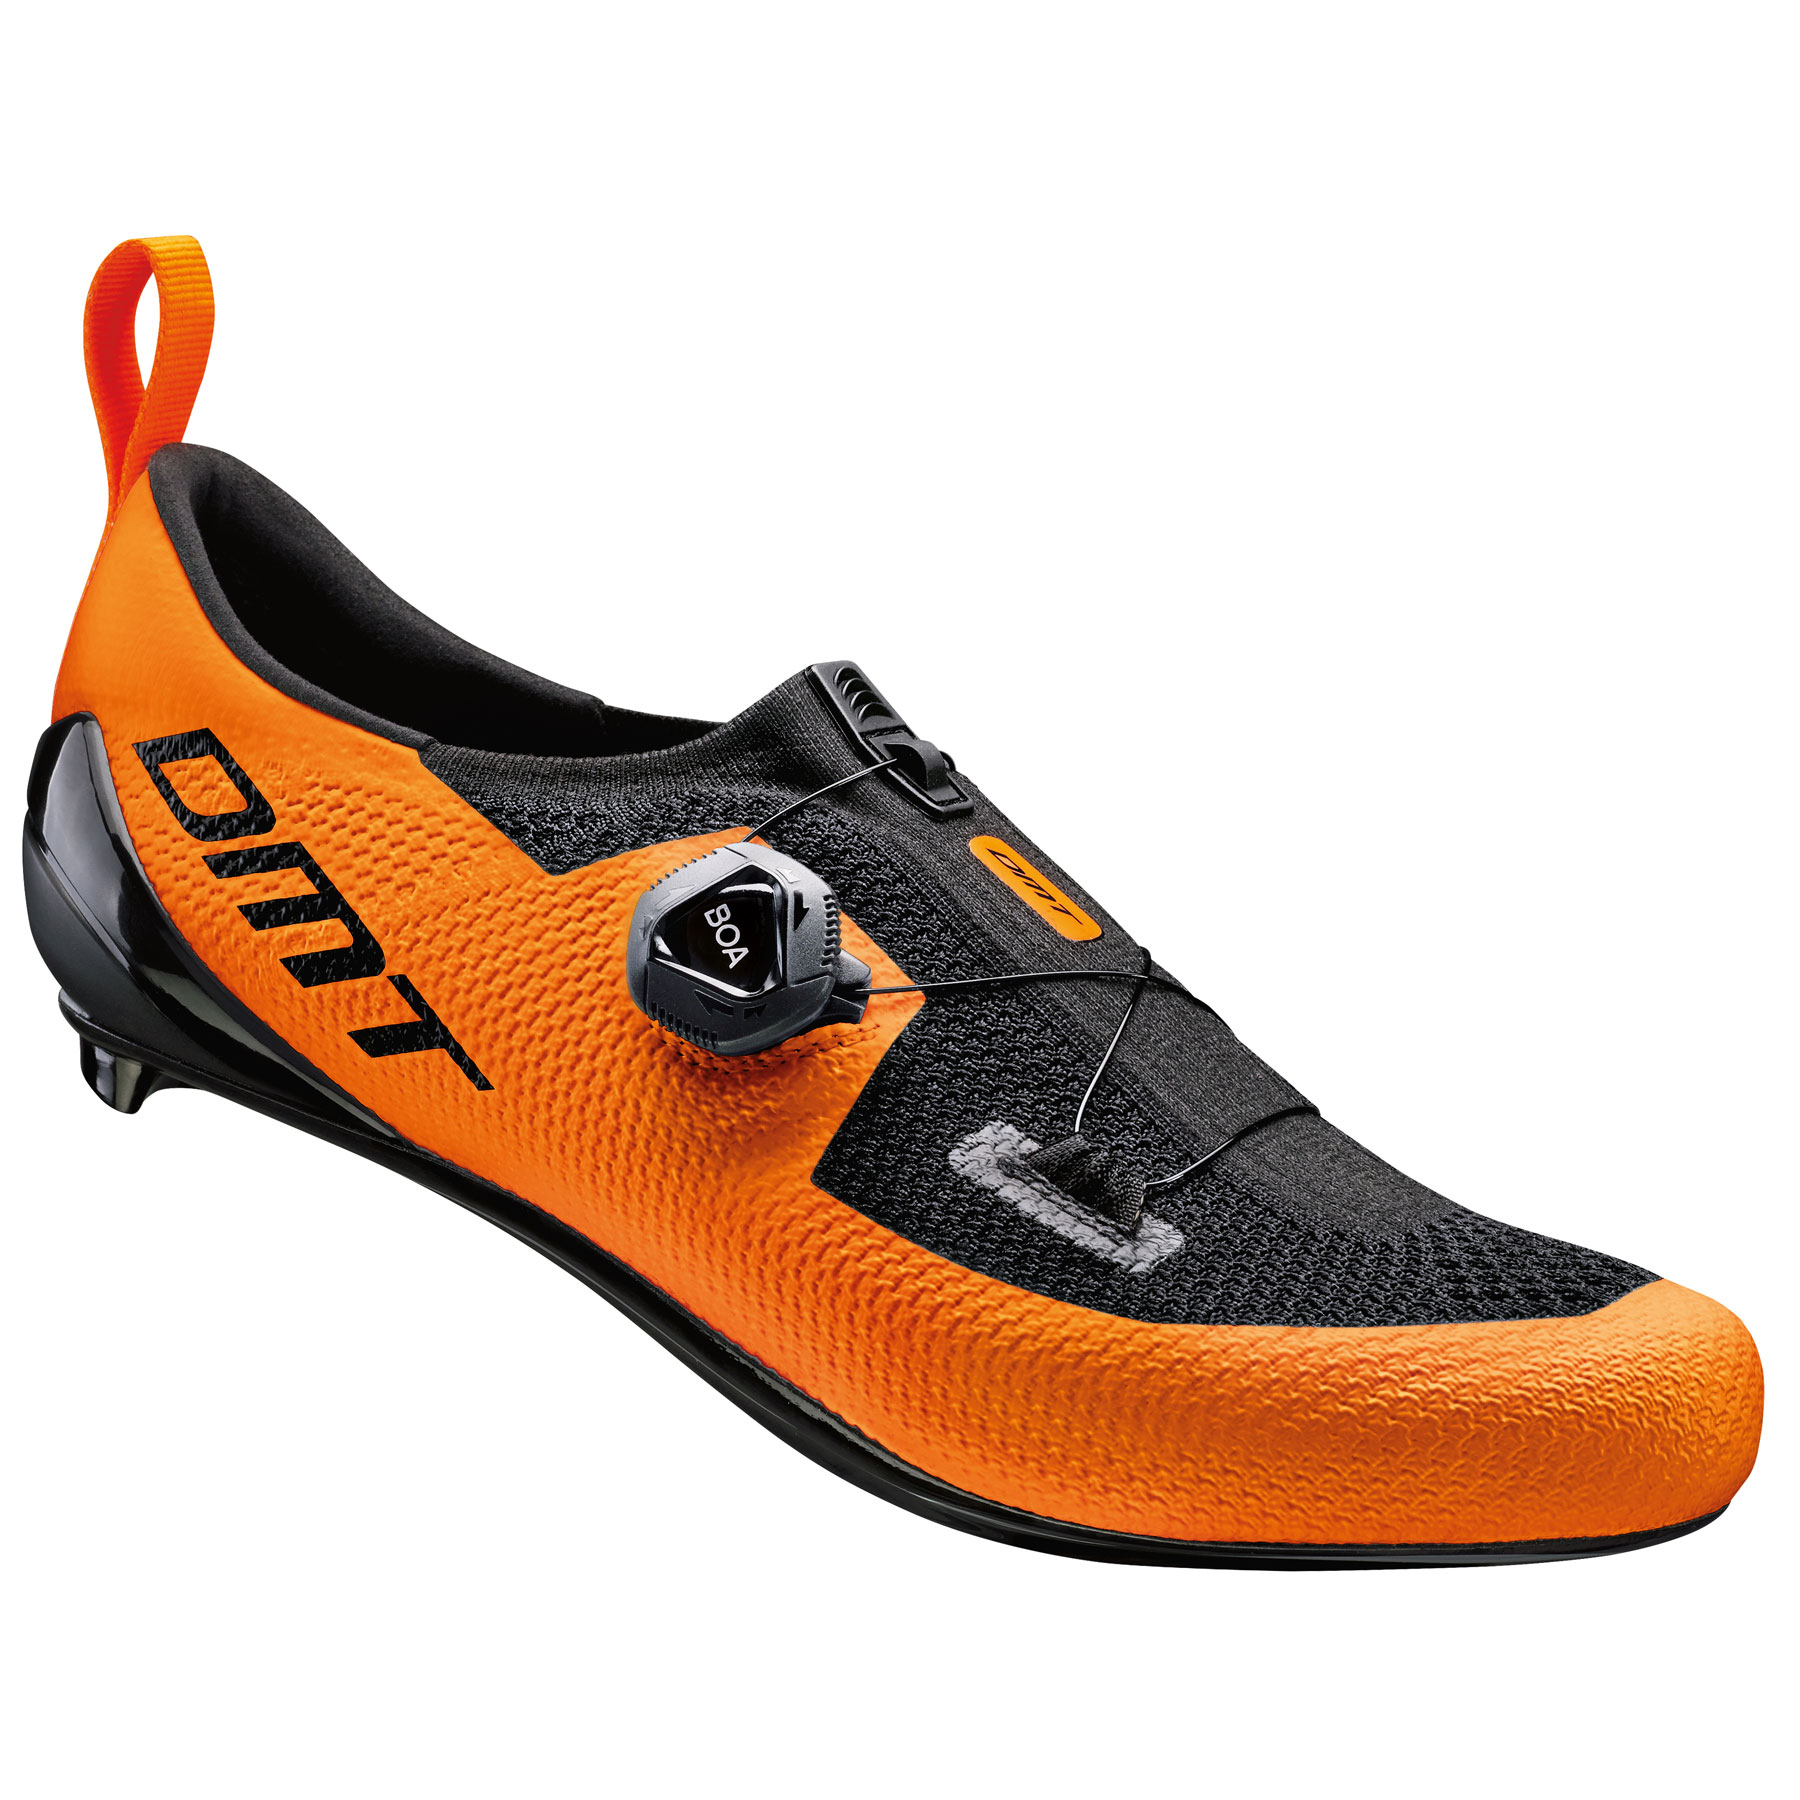 Immagine prodotto da DMT KT1 Triathlon Shoe - orange/black